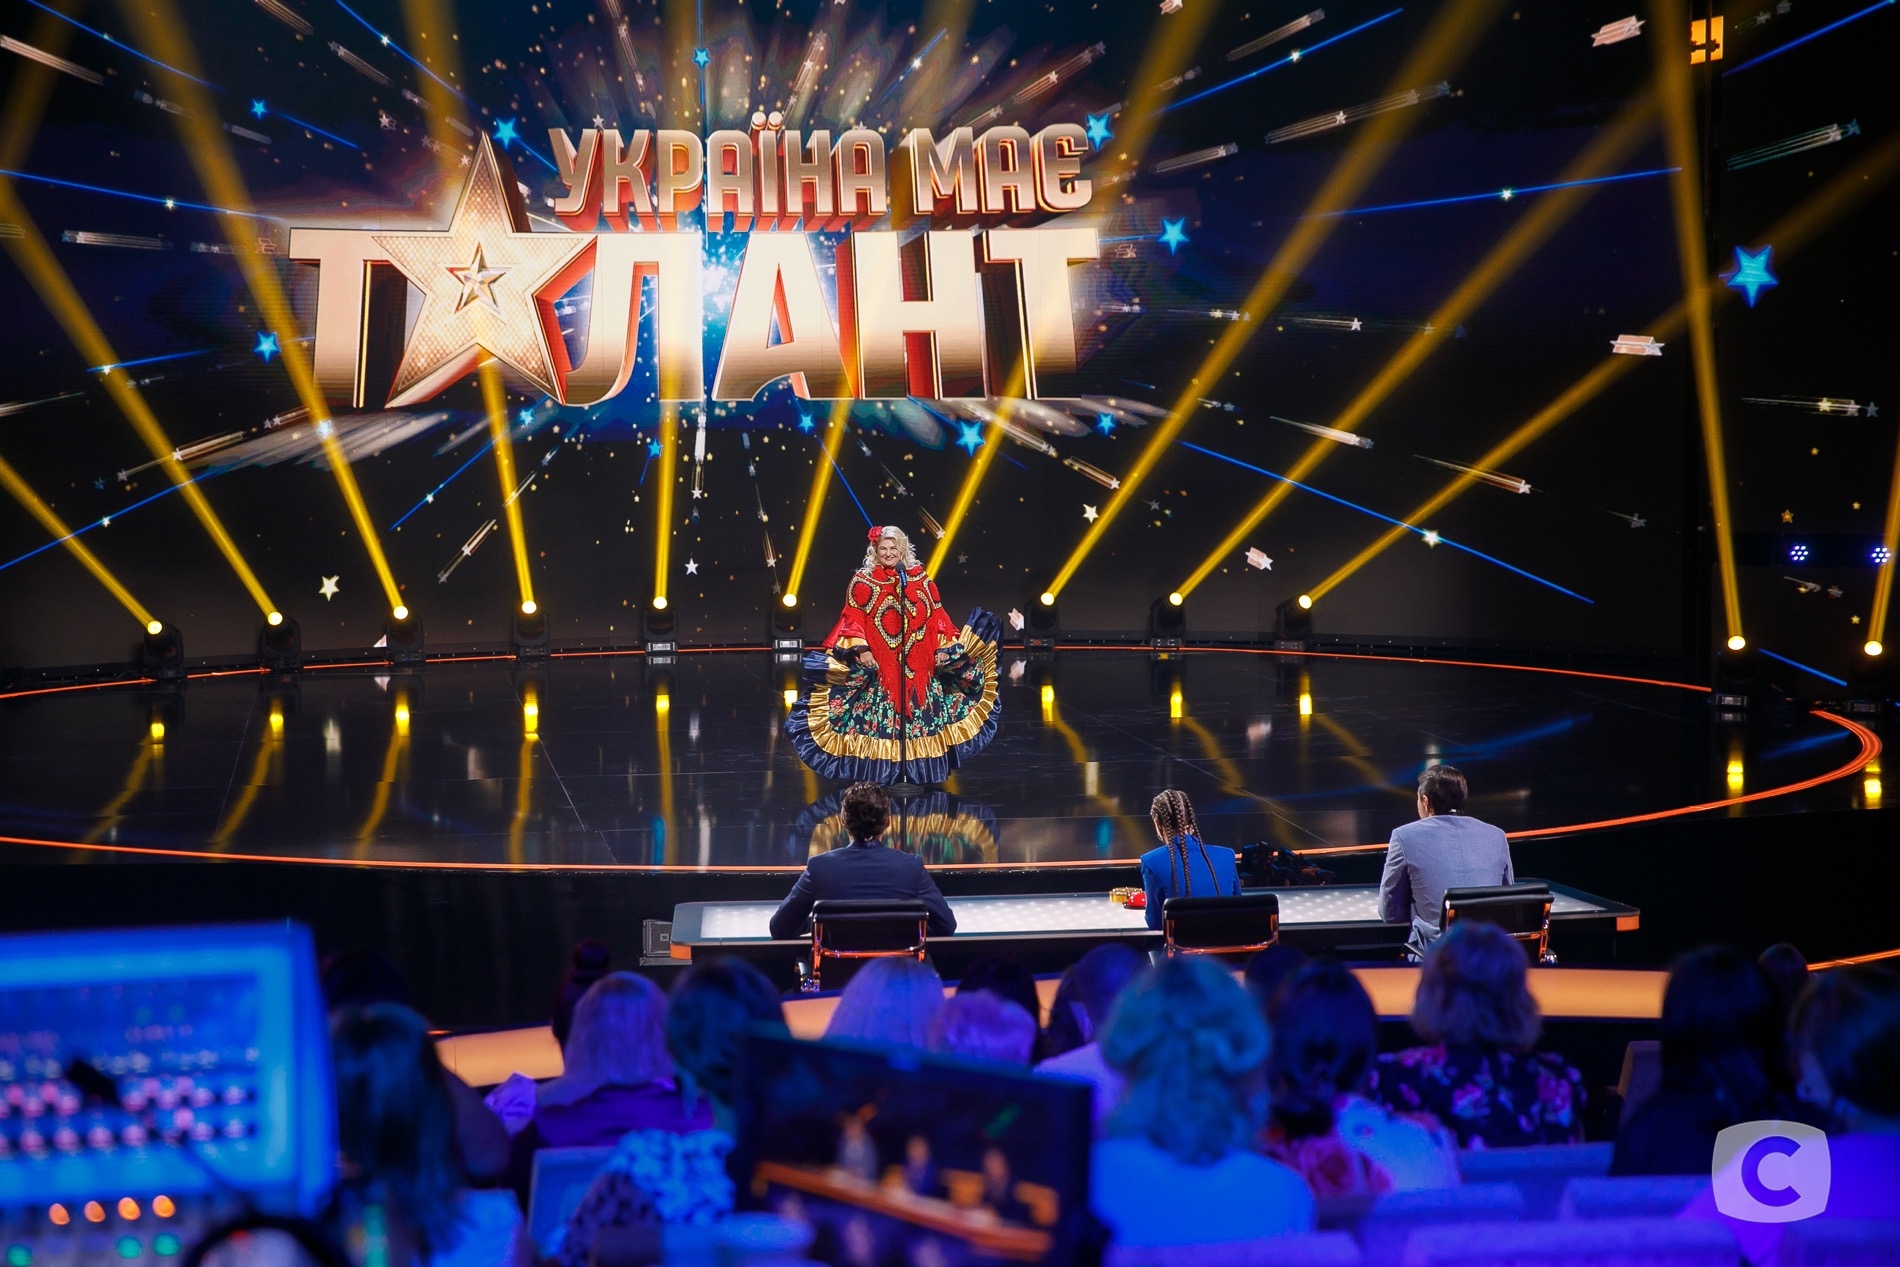 Не пропустите: украинка с самым большим бюстом станцует цыганочку на сцене "Україна має талант" - фото №3